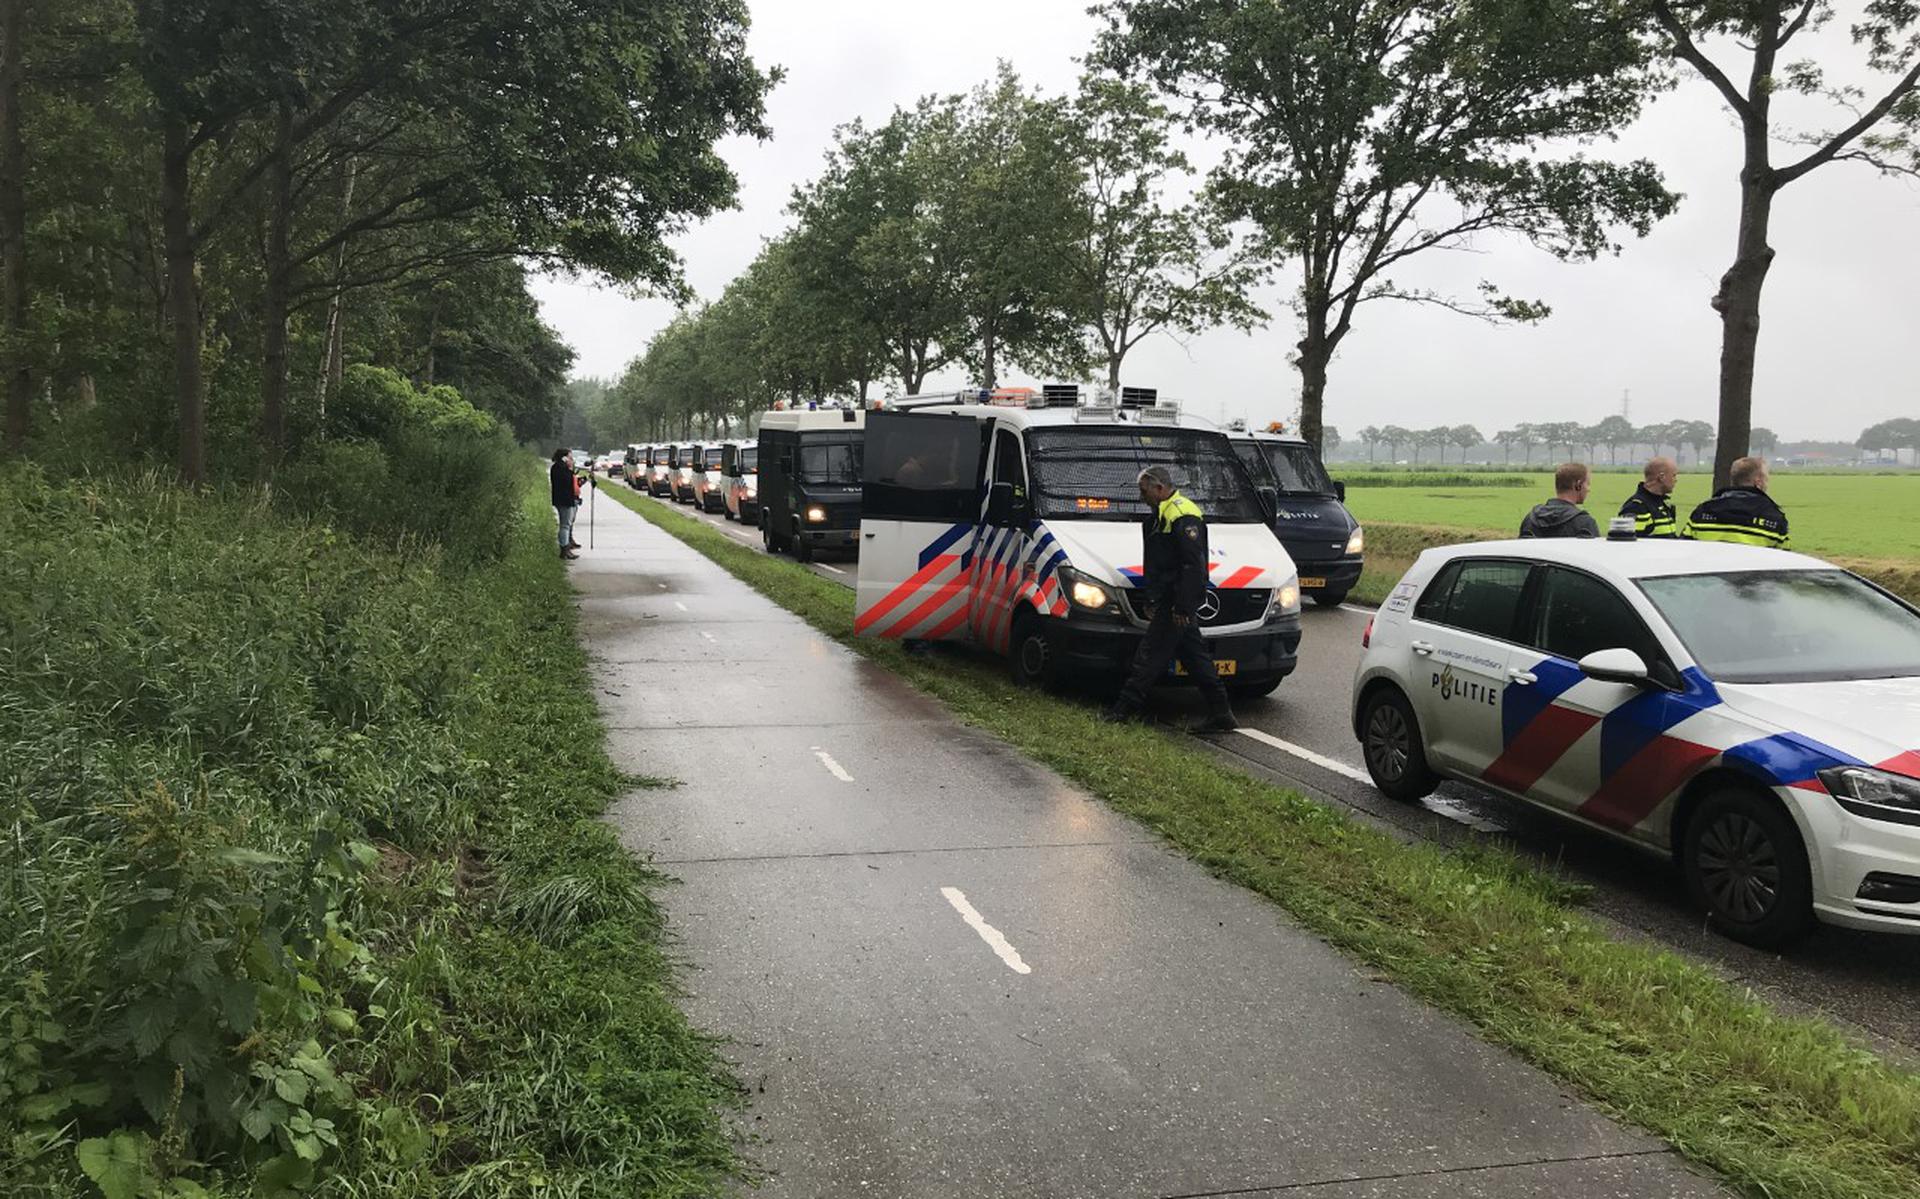 Lang stond de colonne politievoertuigen stil op de Vamweg om uiteindelijk toch massaal in actie te komen op het erf van akkerbouwer Henk Fikkert, waar de boeren naartoe waren gegaan voor de nazit.